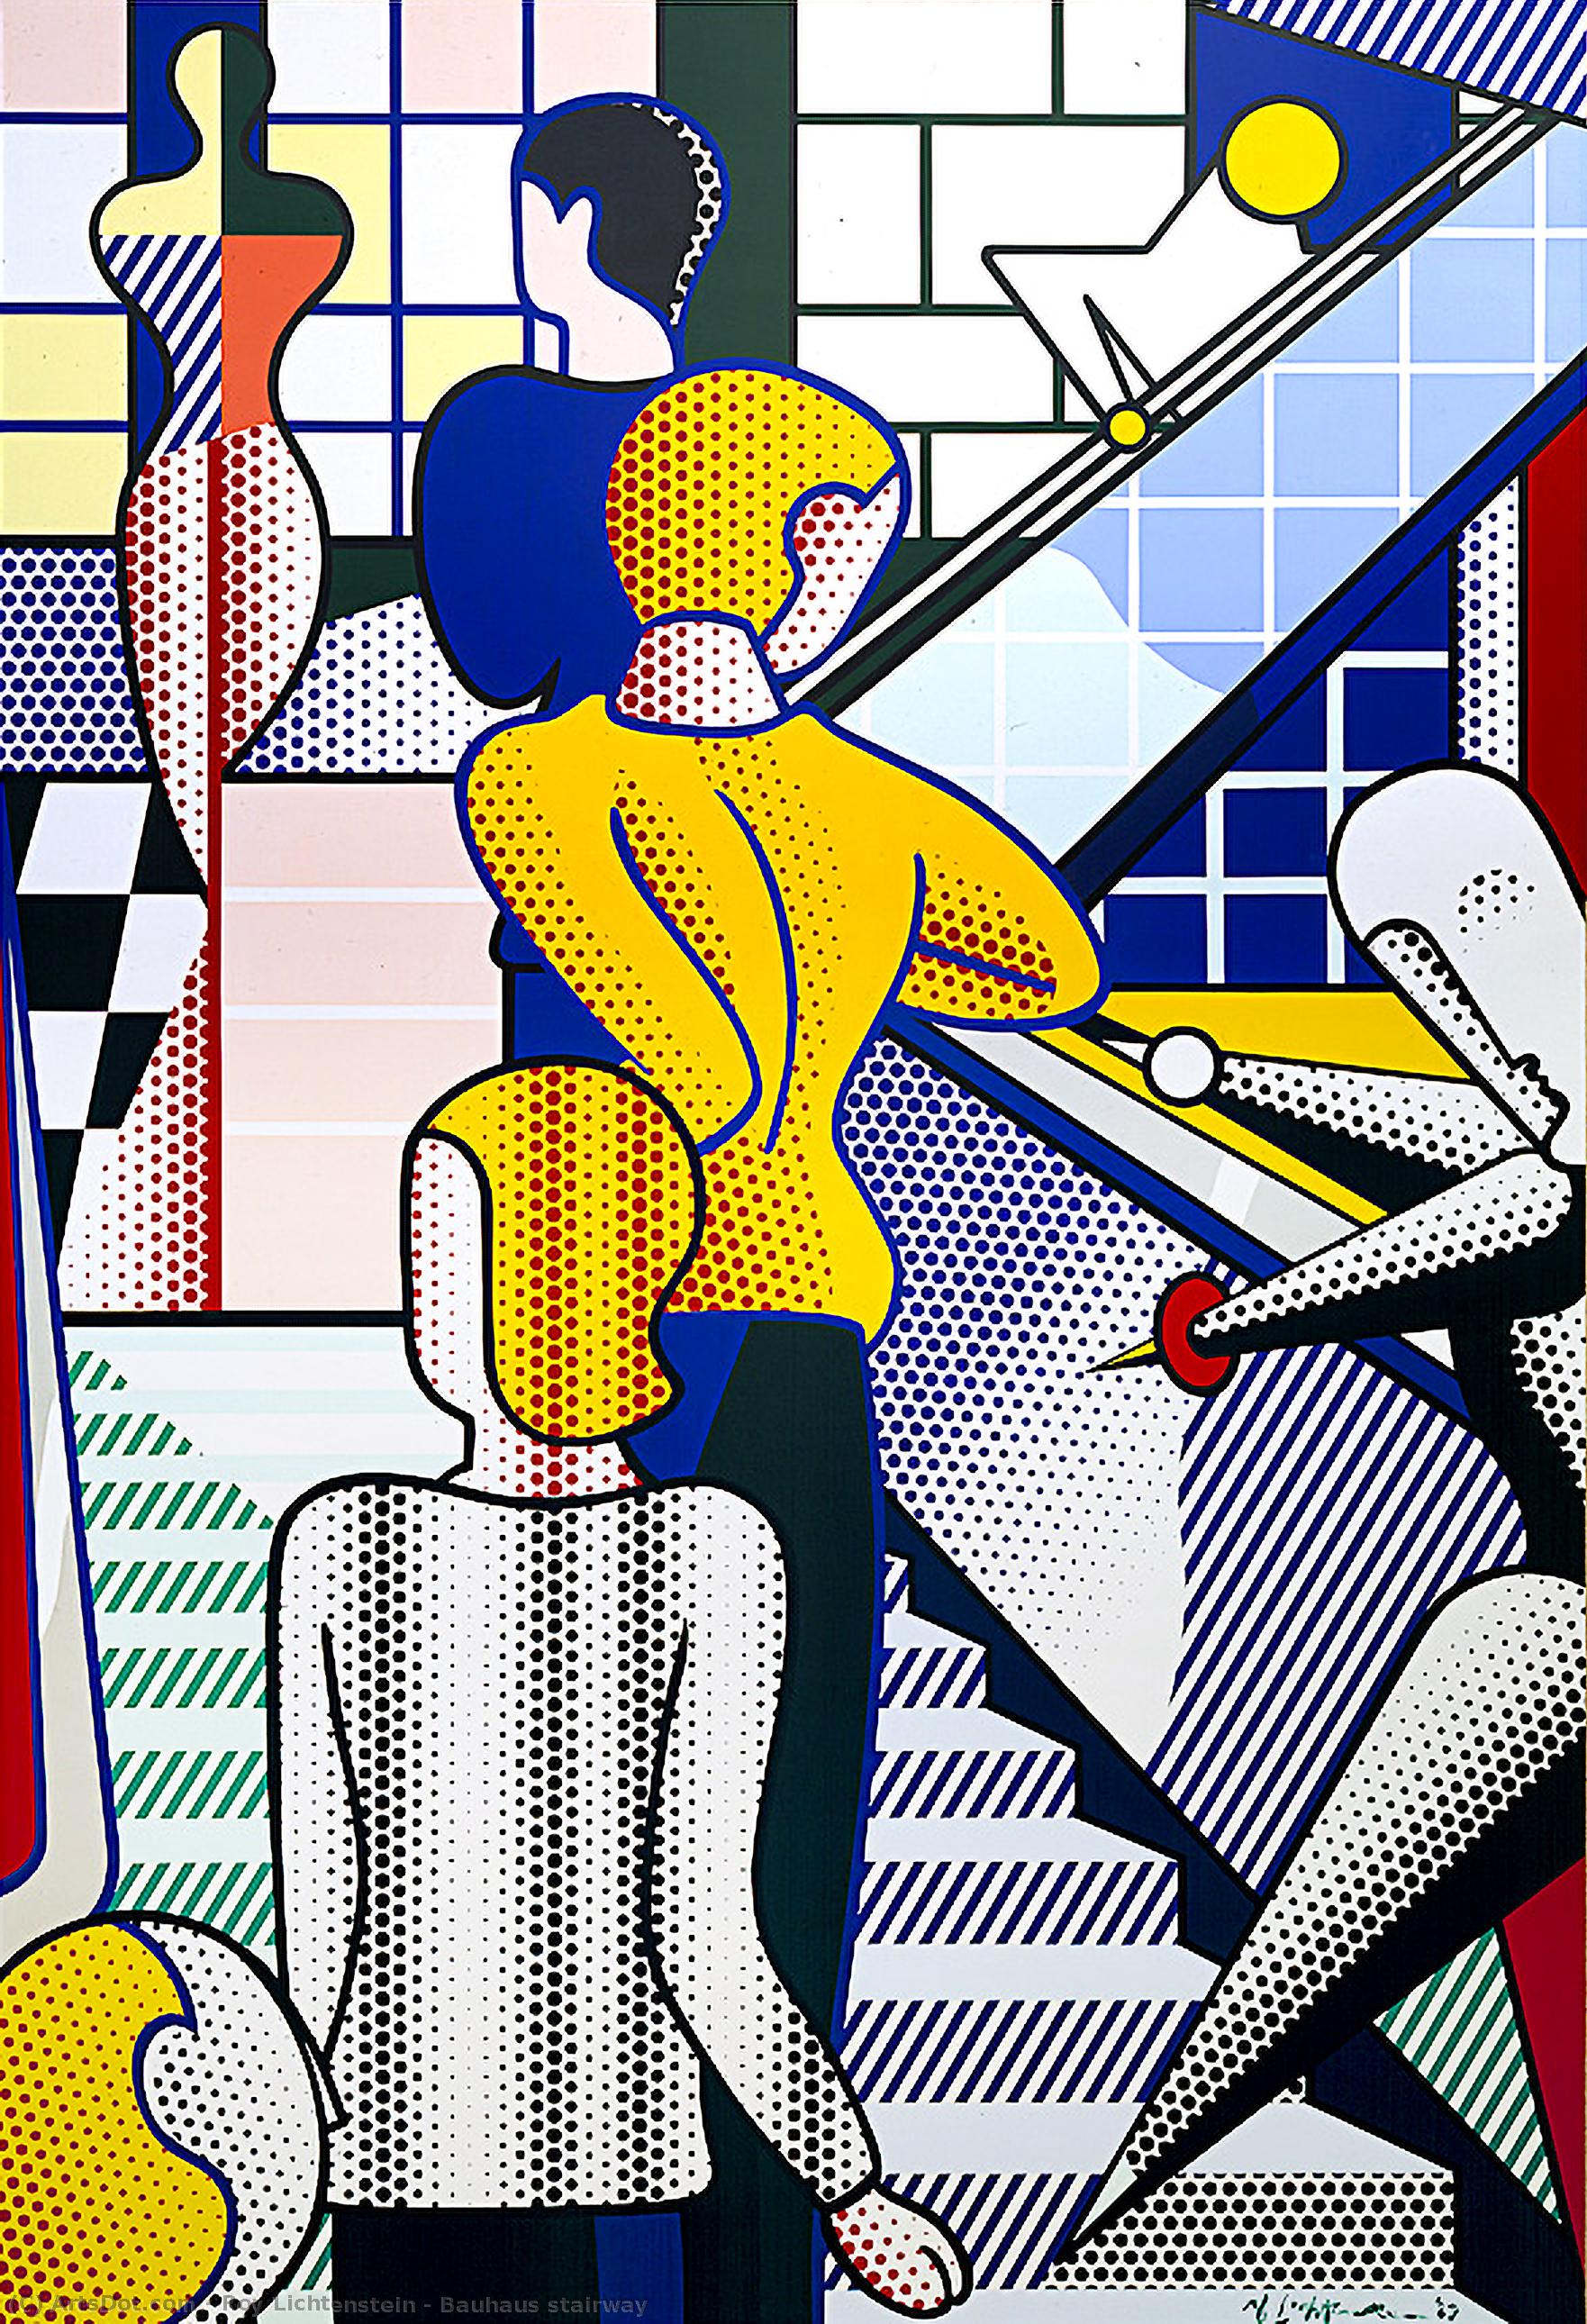 WikiOO.org - Encyclopedia of Fine Arts - Malba, Artwork Roy Lichtenstein - Bauhaus stairway